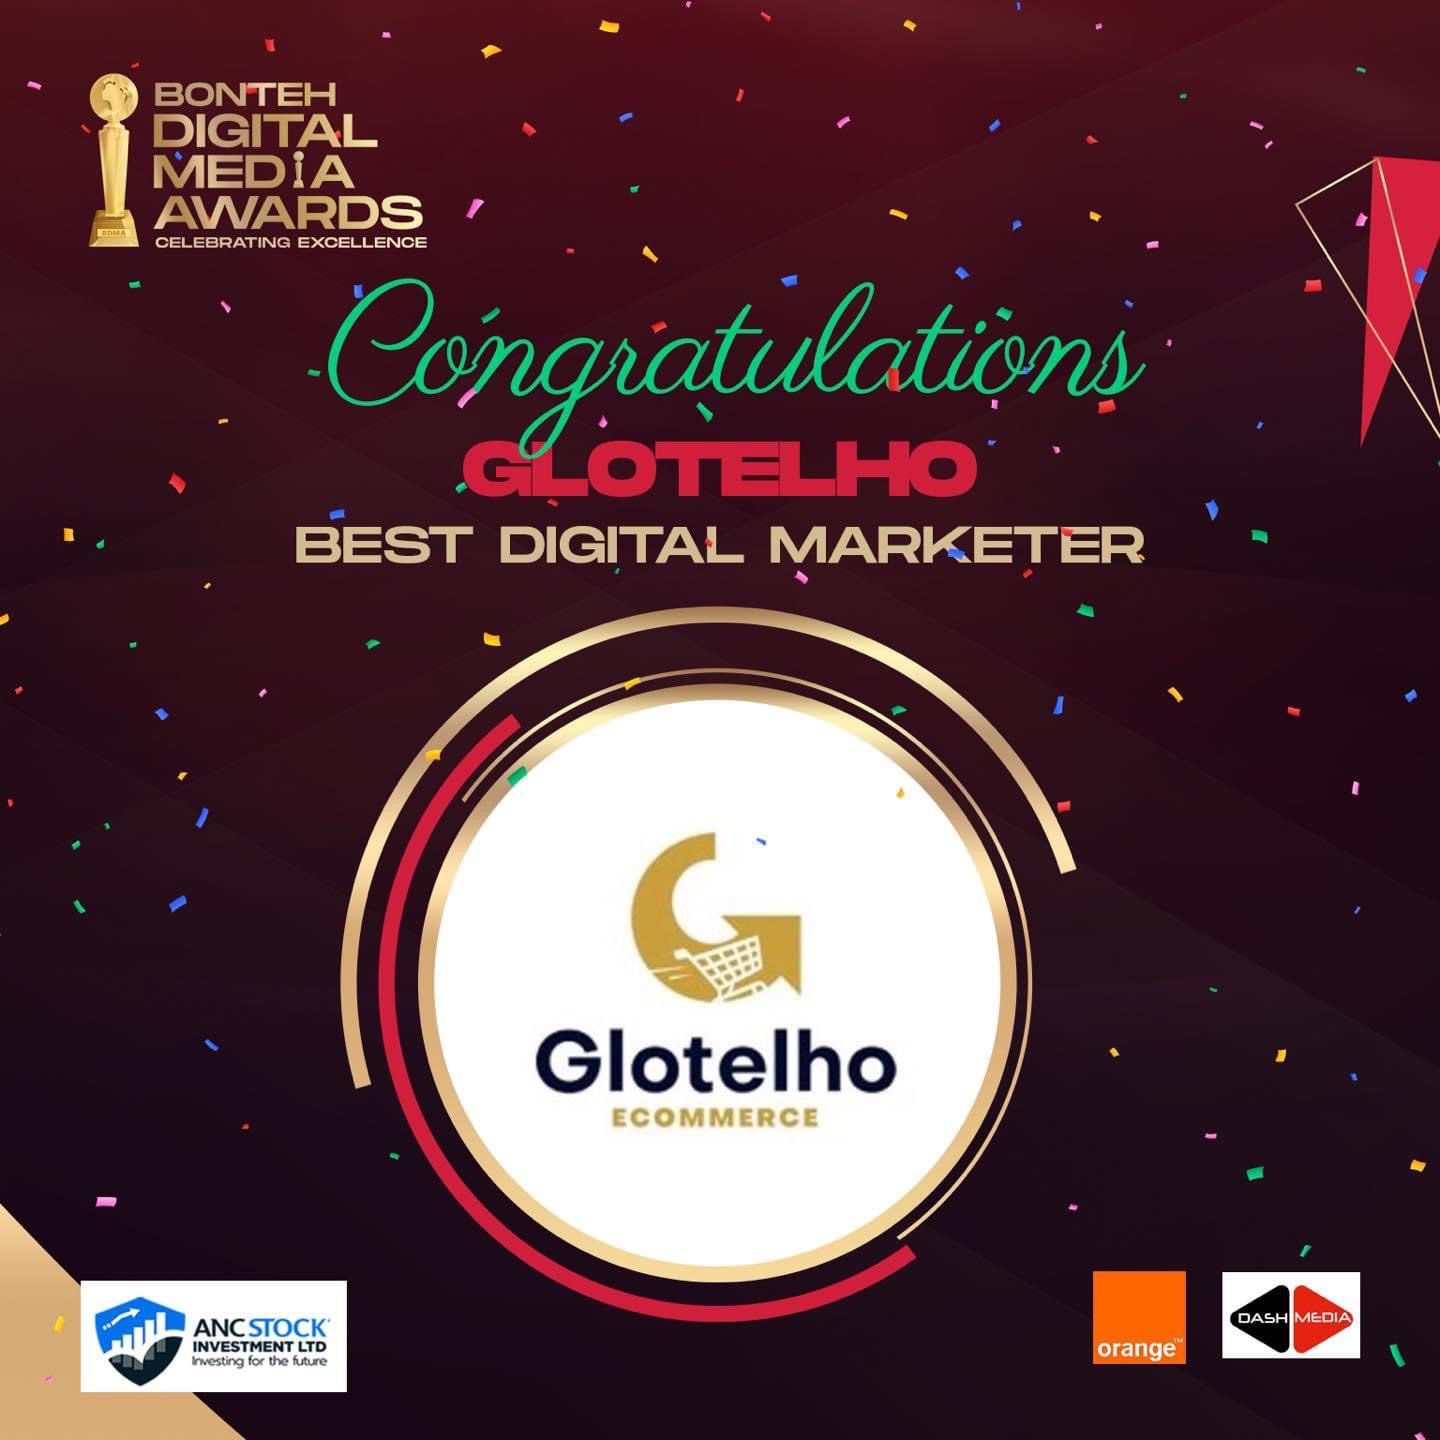 Best Digital Marketer: Glotelho